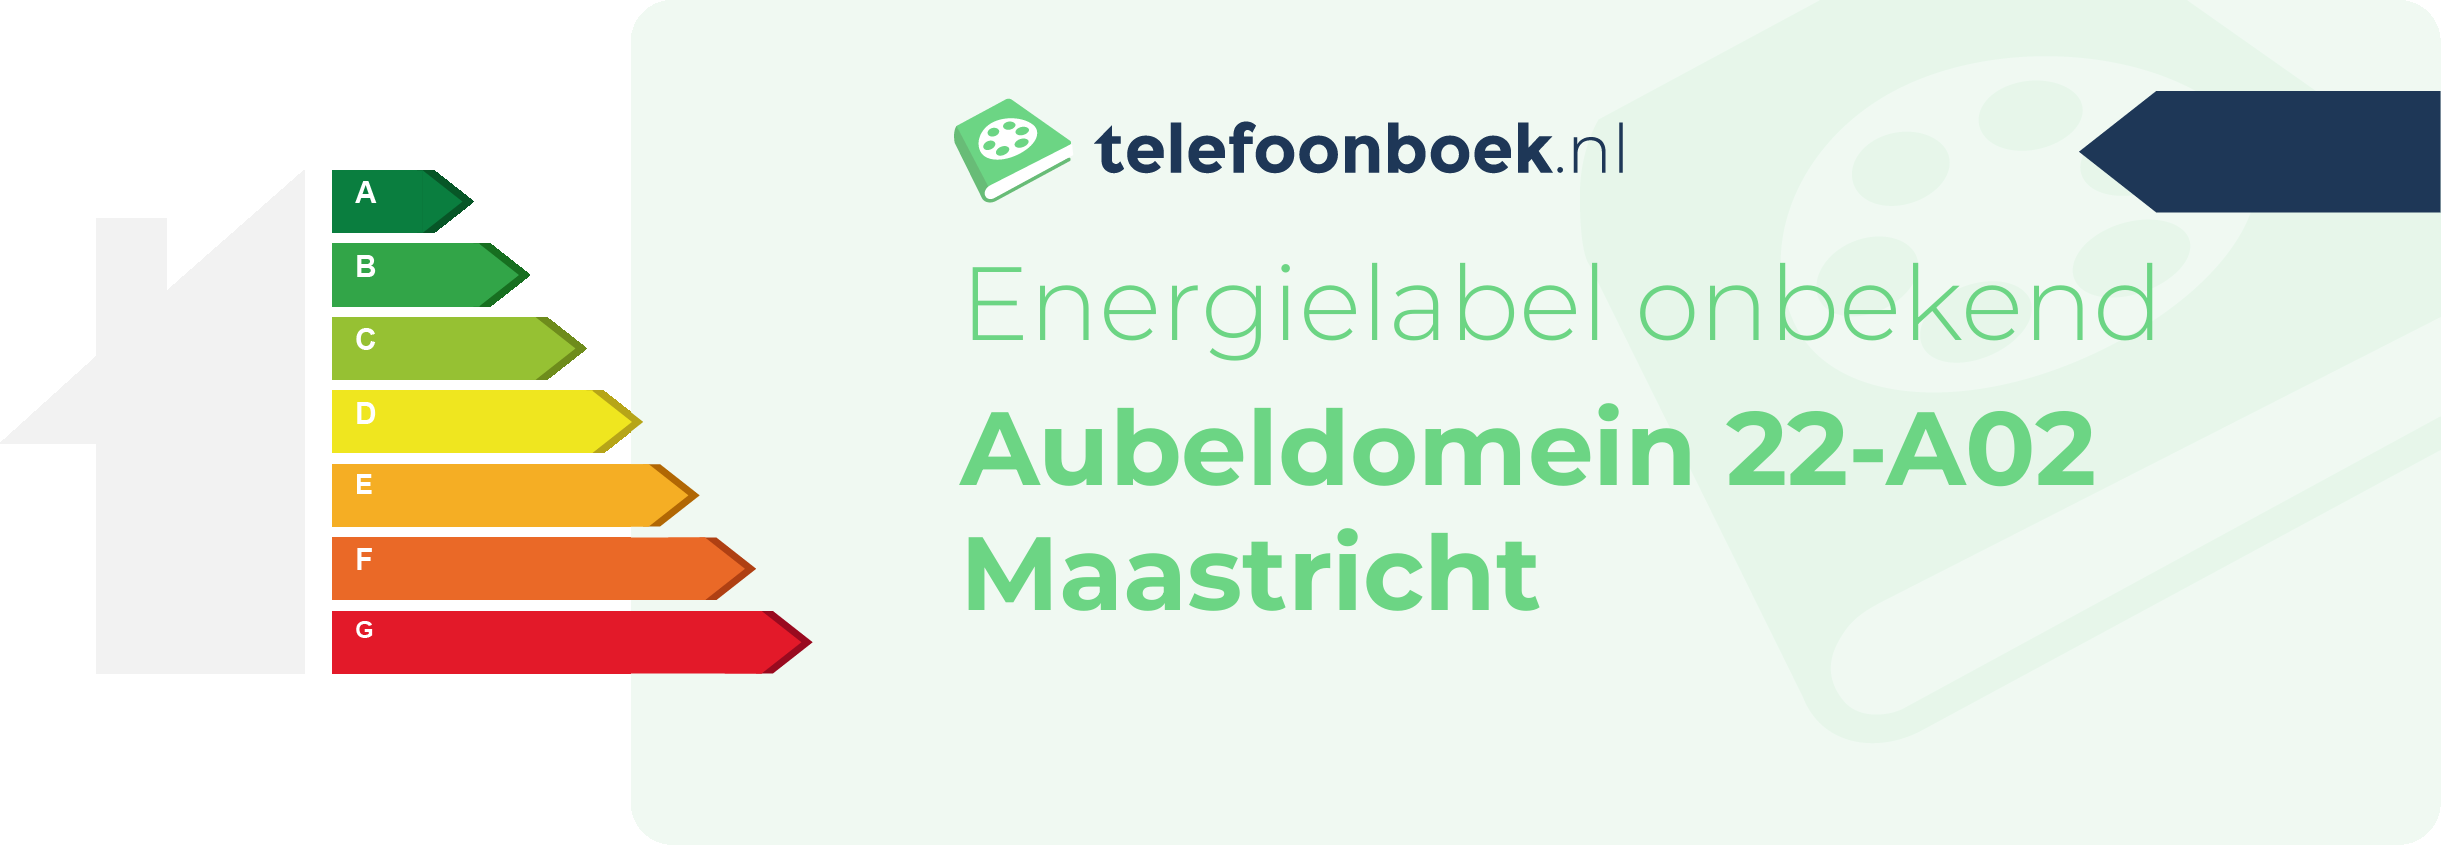 Energielabel Aubeldomein 22-A02 Maastricht